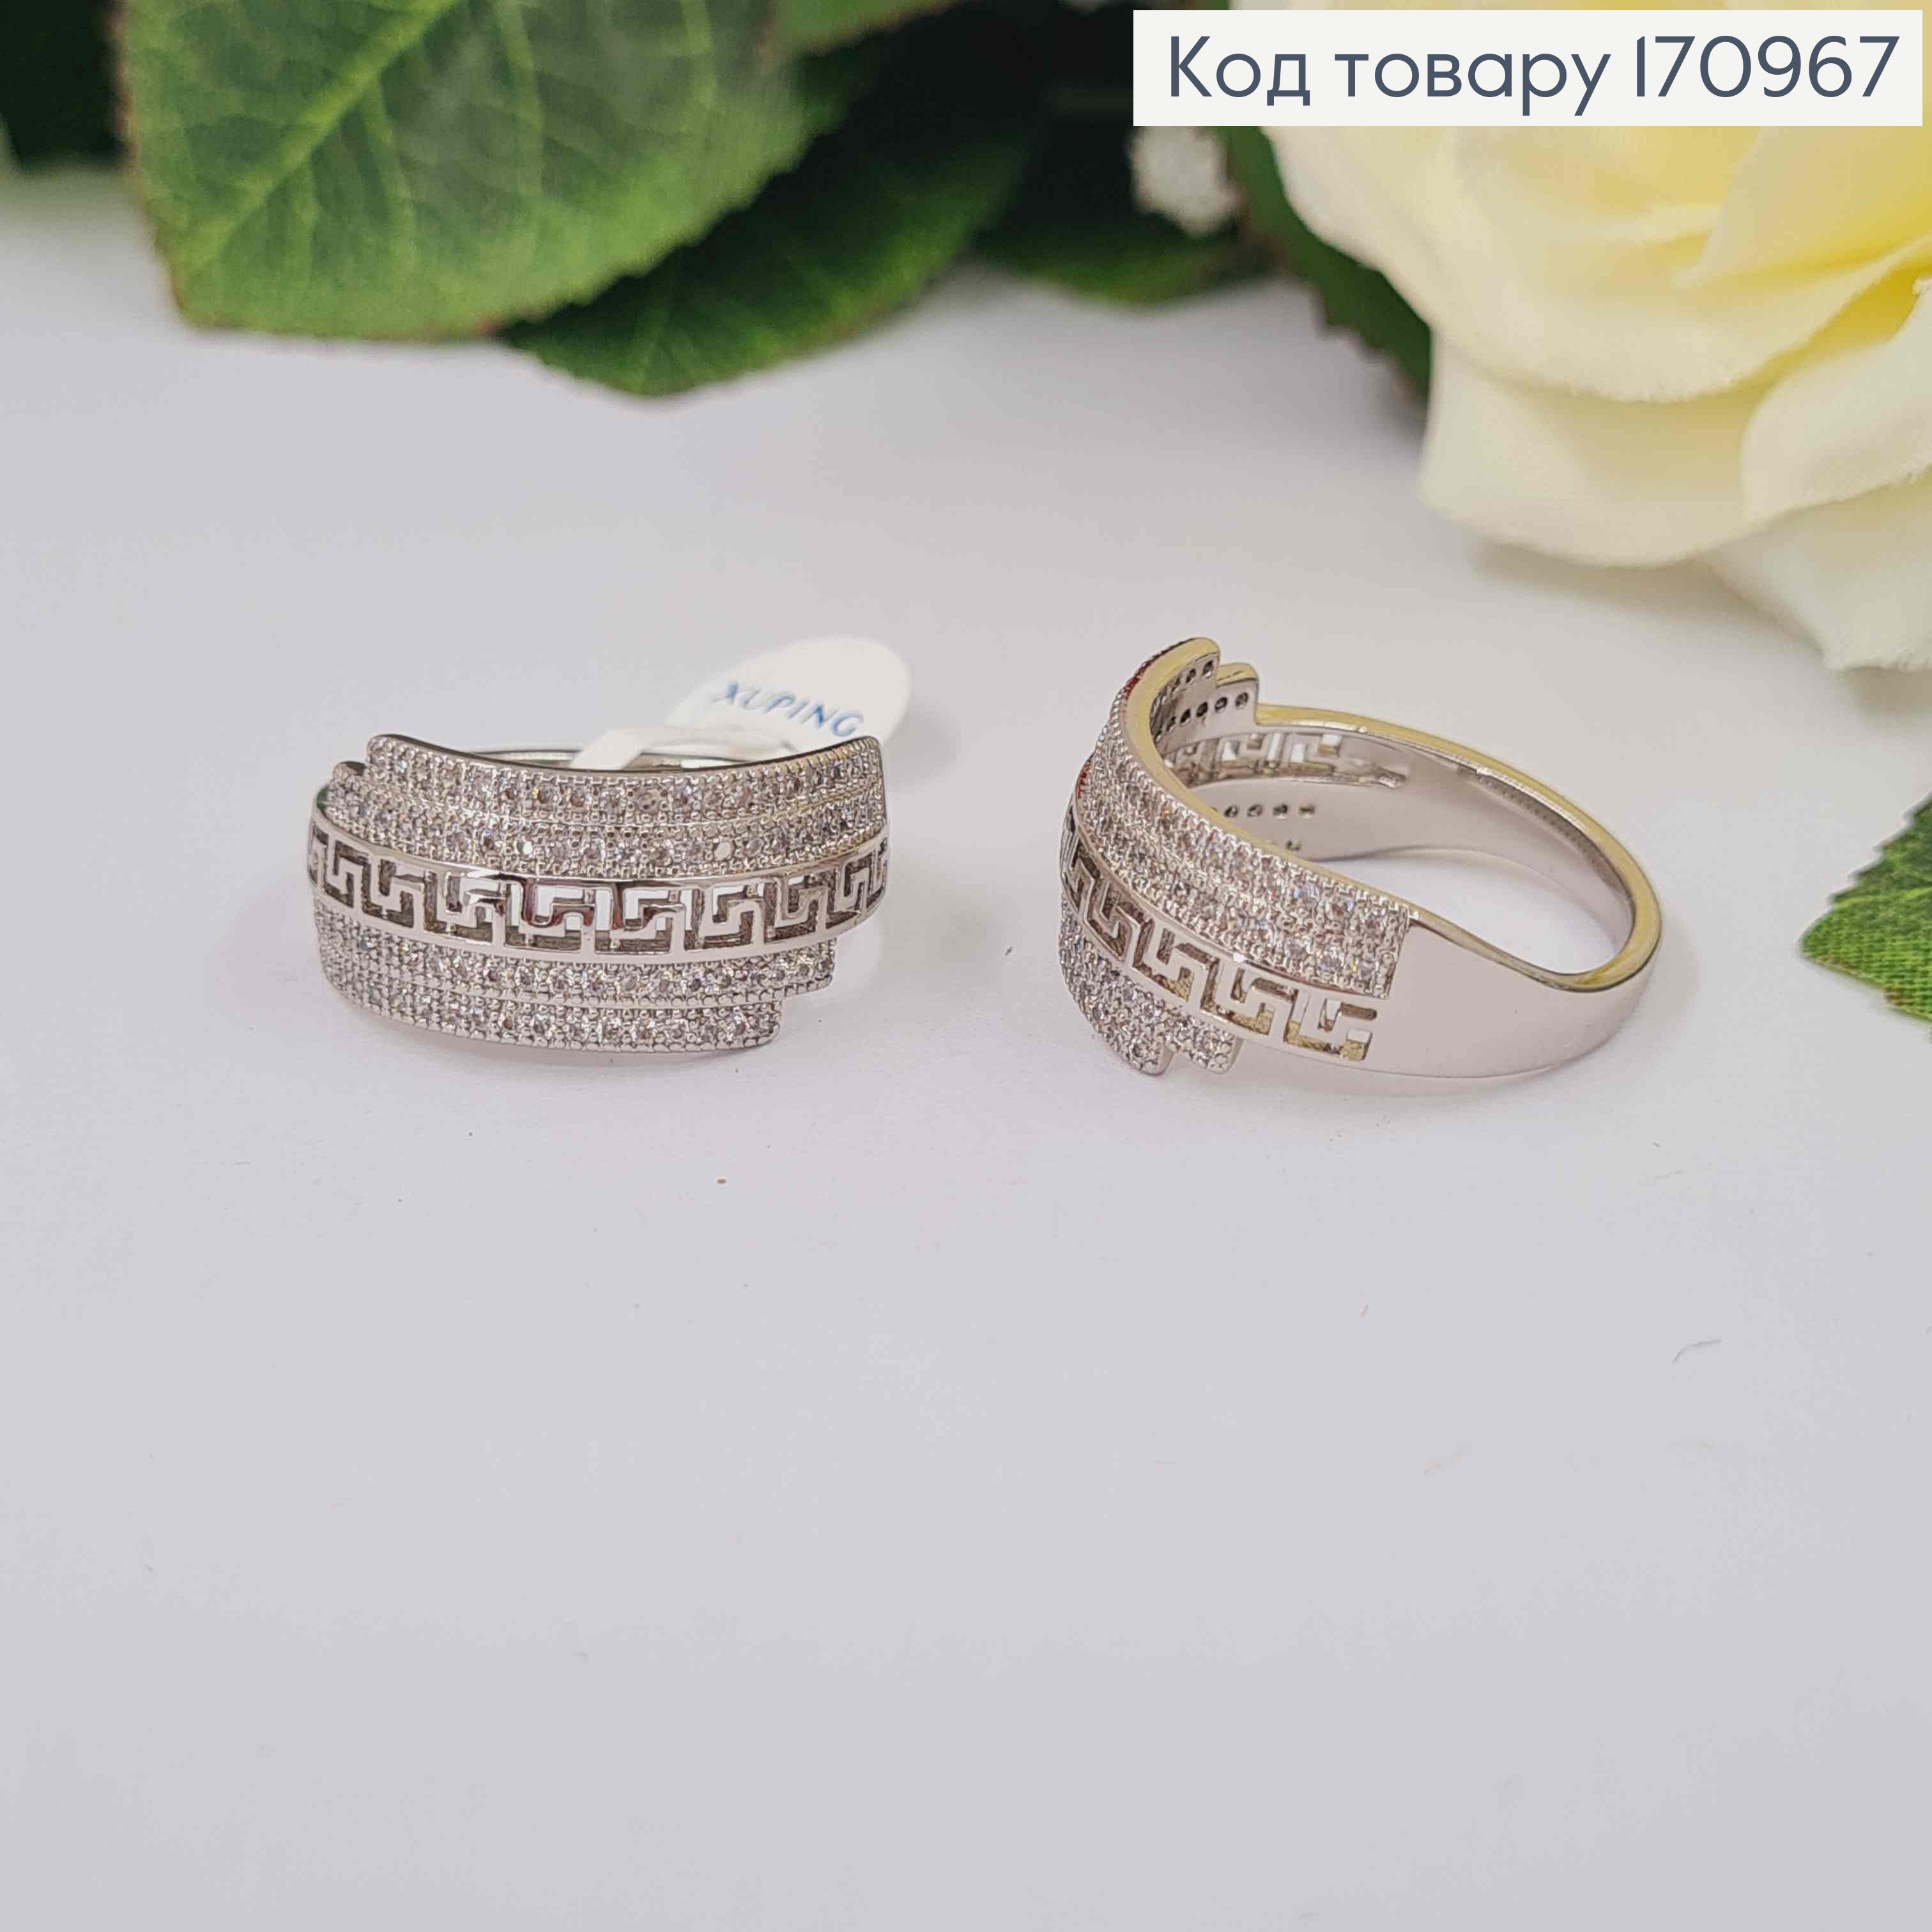 Перстень, "Версаче" широкий, с камешками, Xuping 18К 170967 фото 2